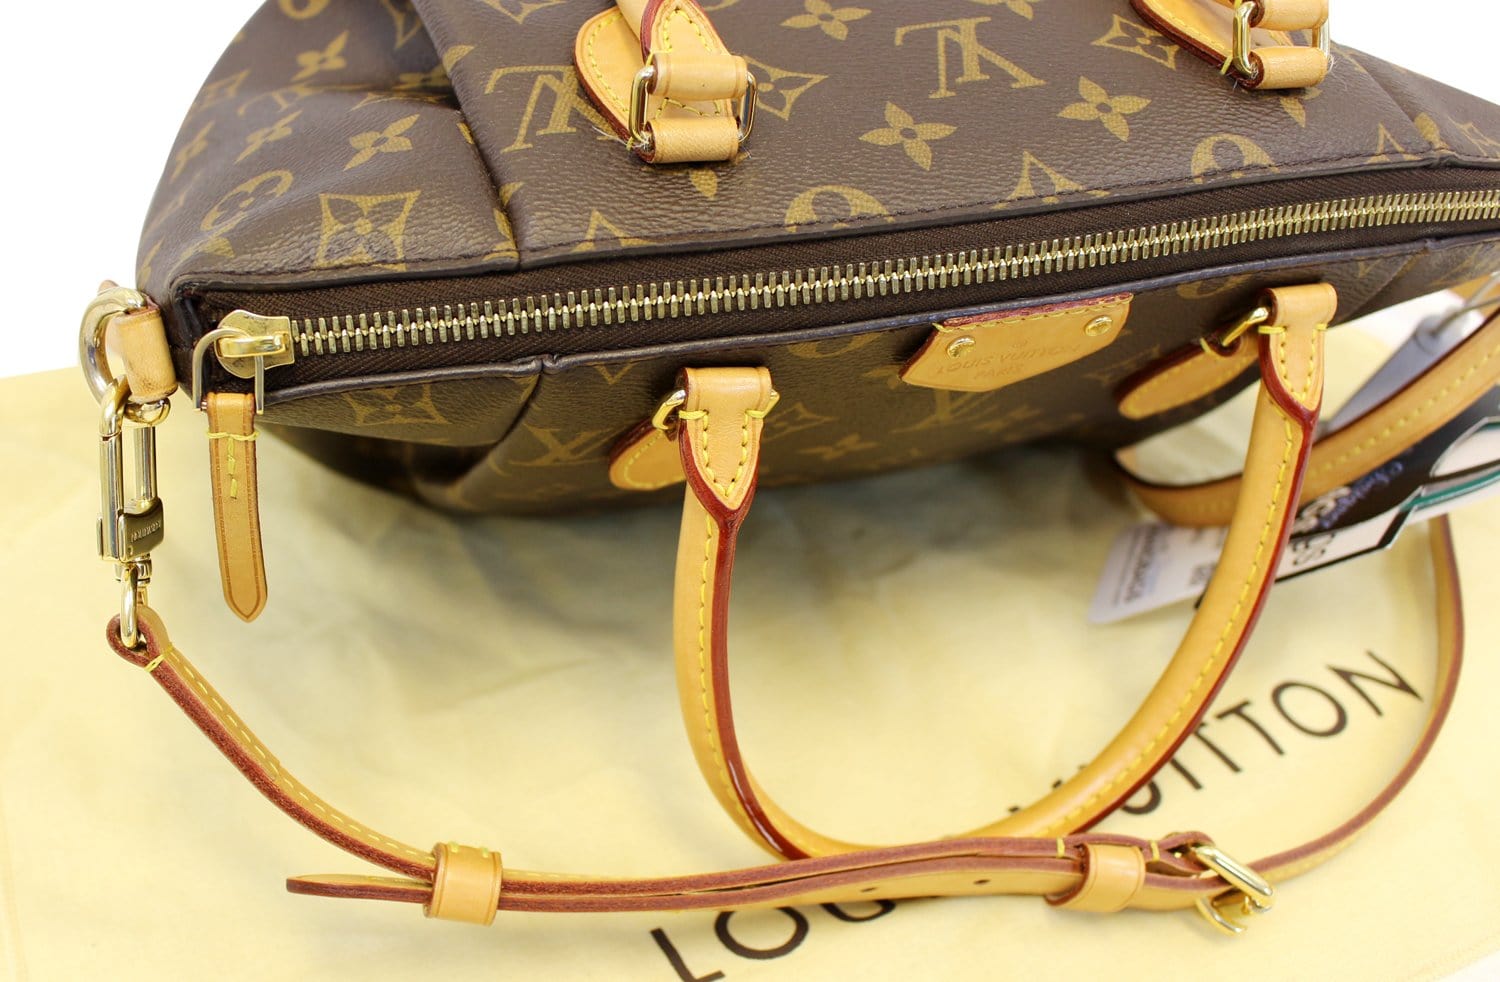 Turenne cloth handbag Louis Vuitton Brown in Cloth - 29523115